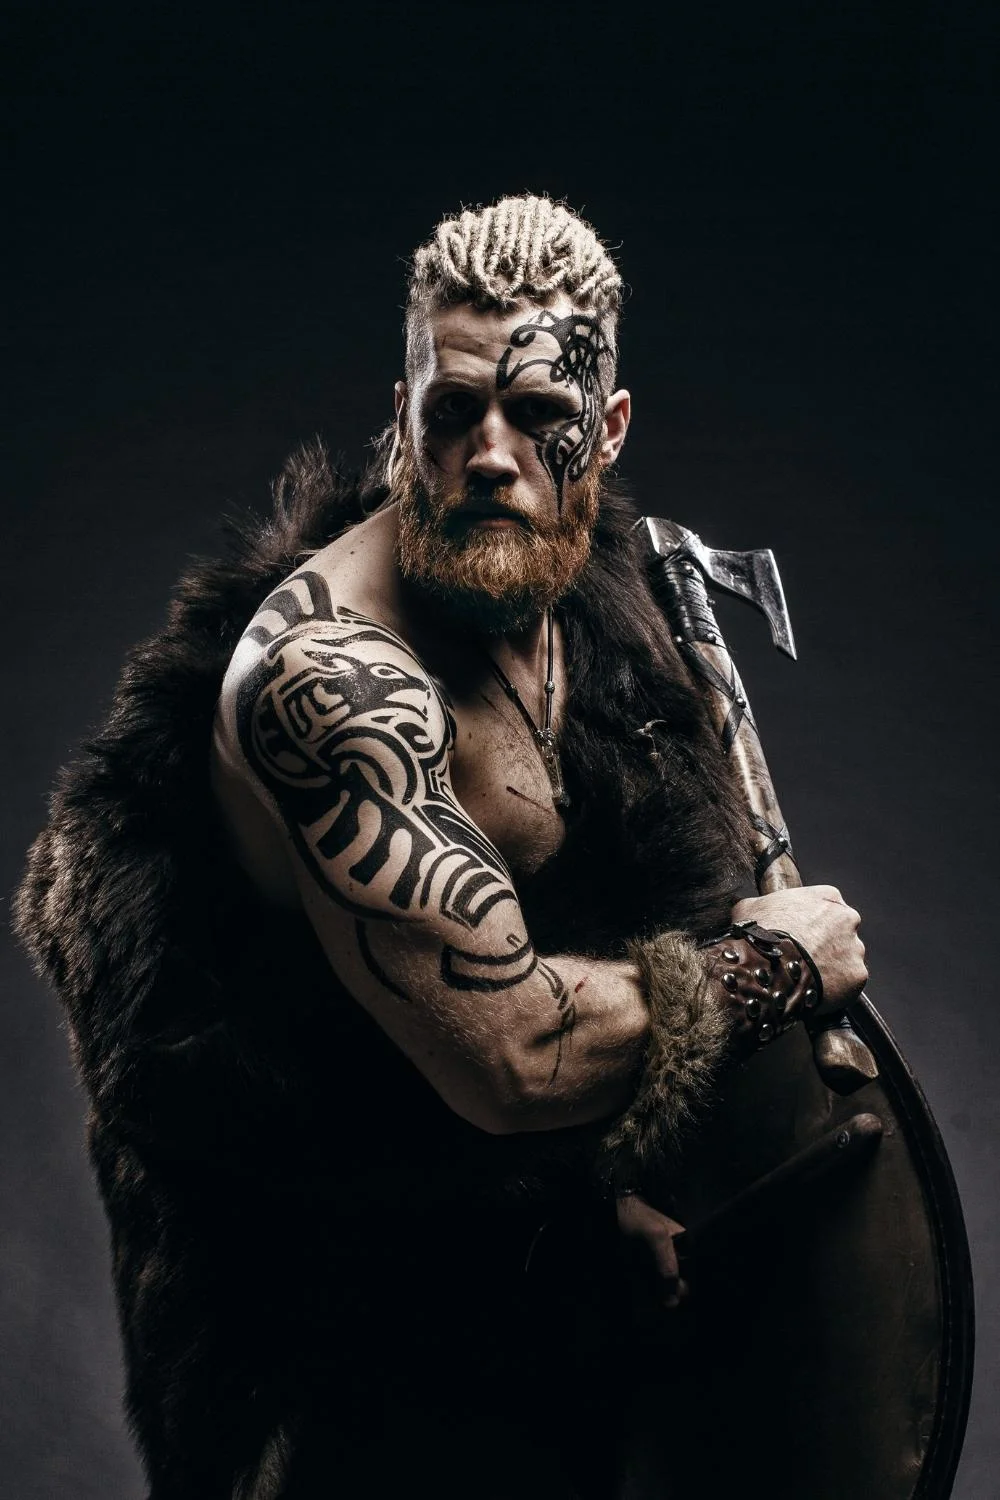 The Viking word is Berserker